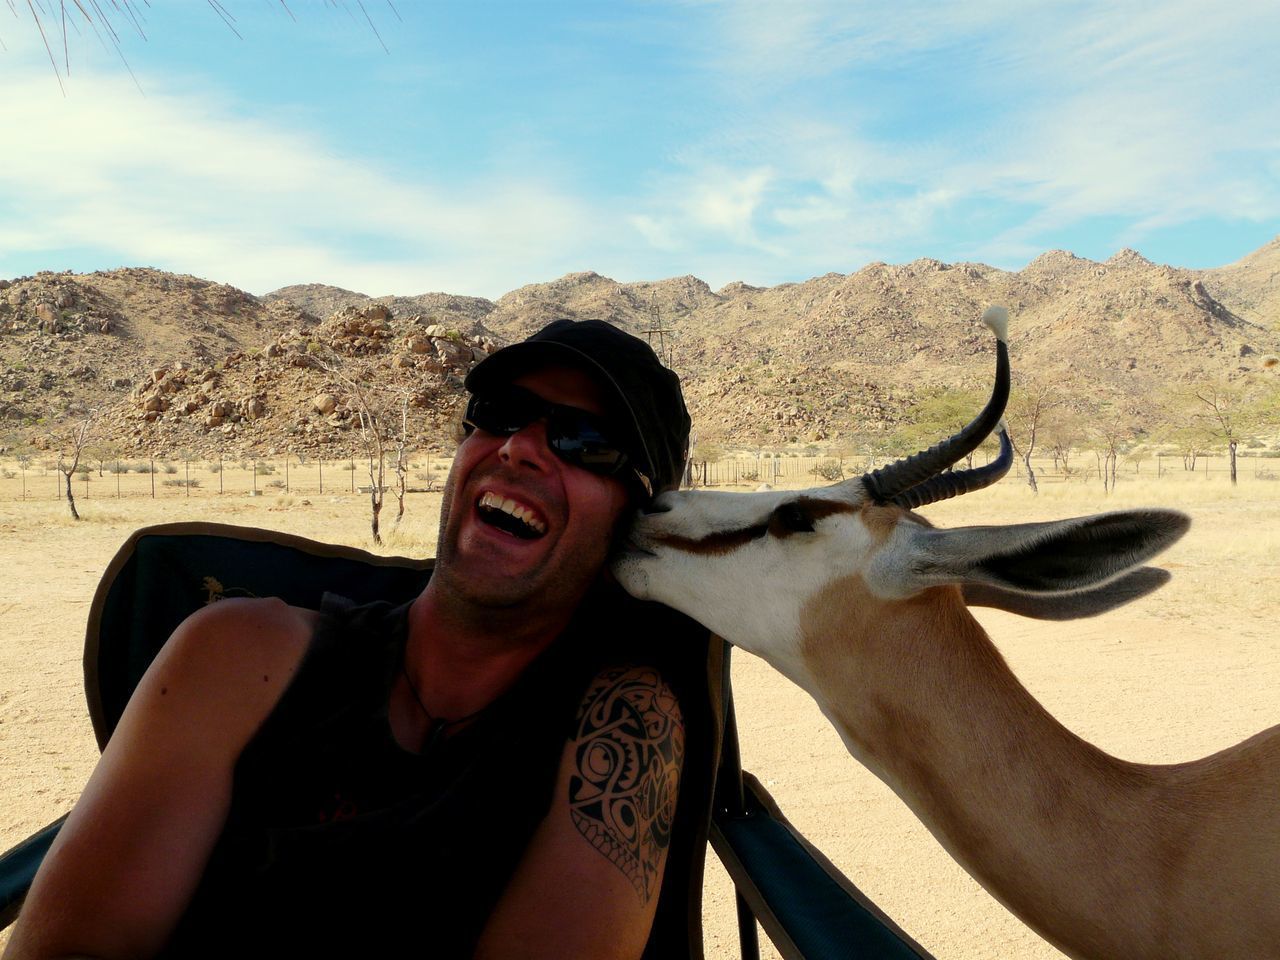 Antelope kissing man